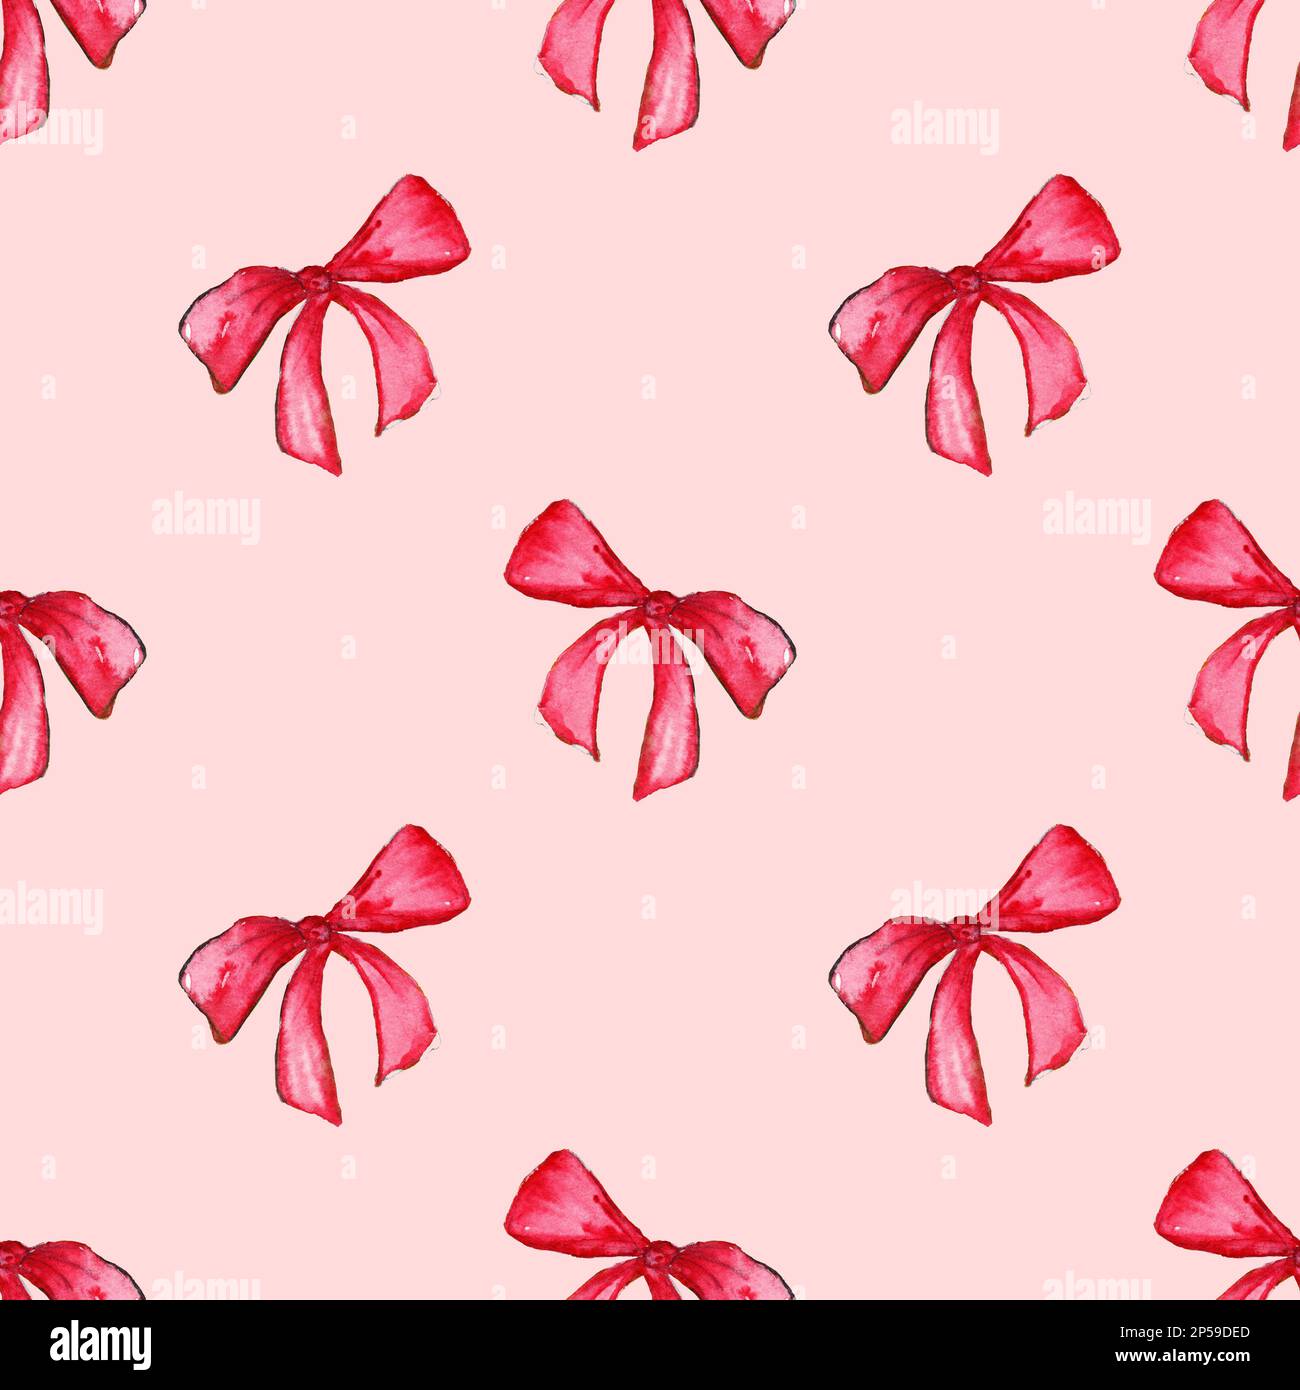 Aquarell Rot Rosa Schleifenband Geschenkpapier mit nahtlosem Muster auf dem Hintergrund. Stockfoto